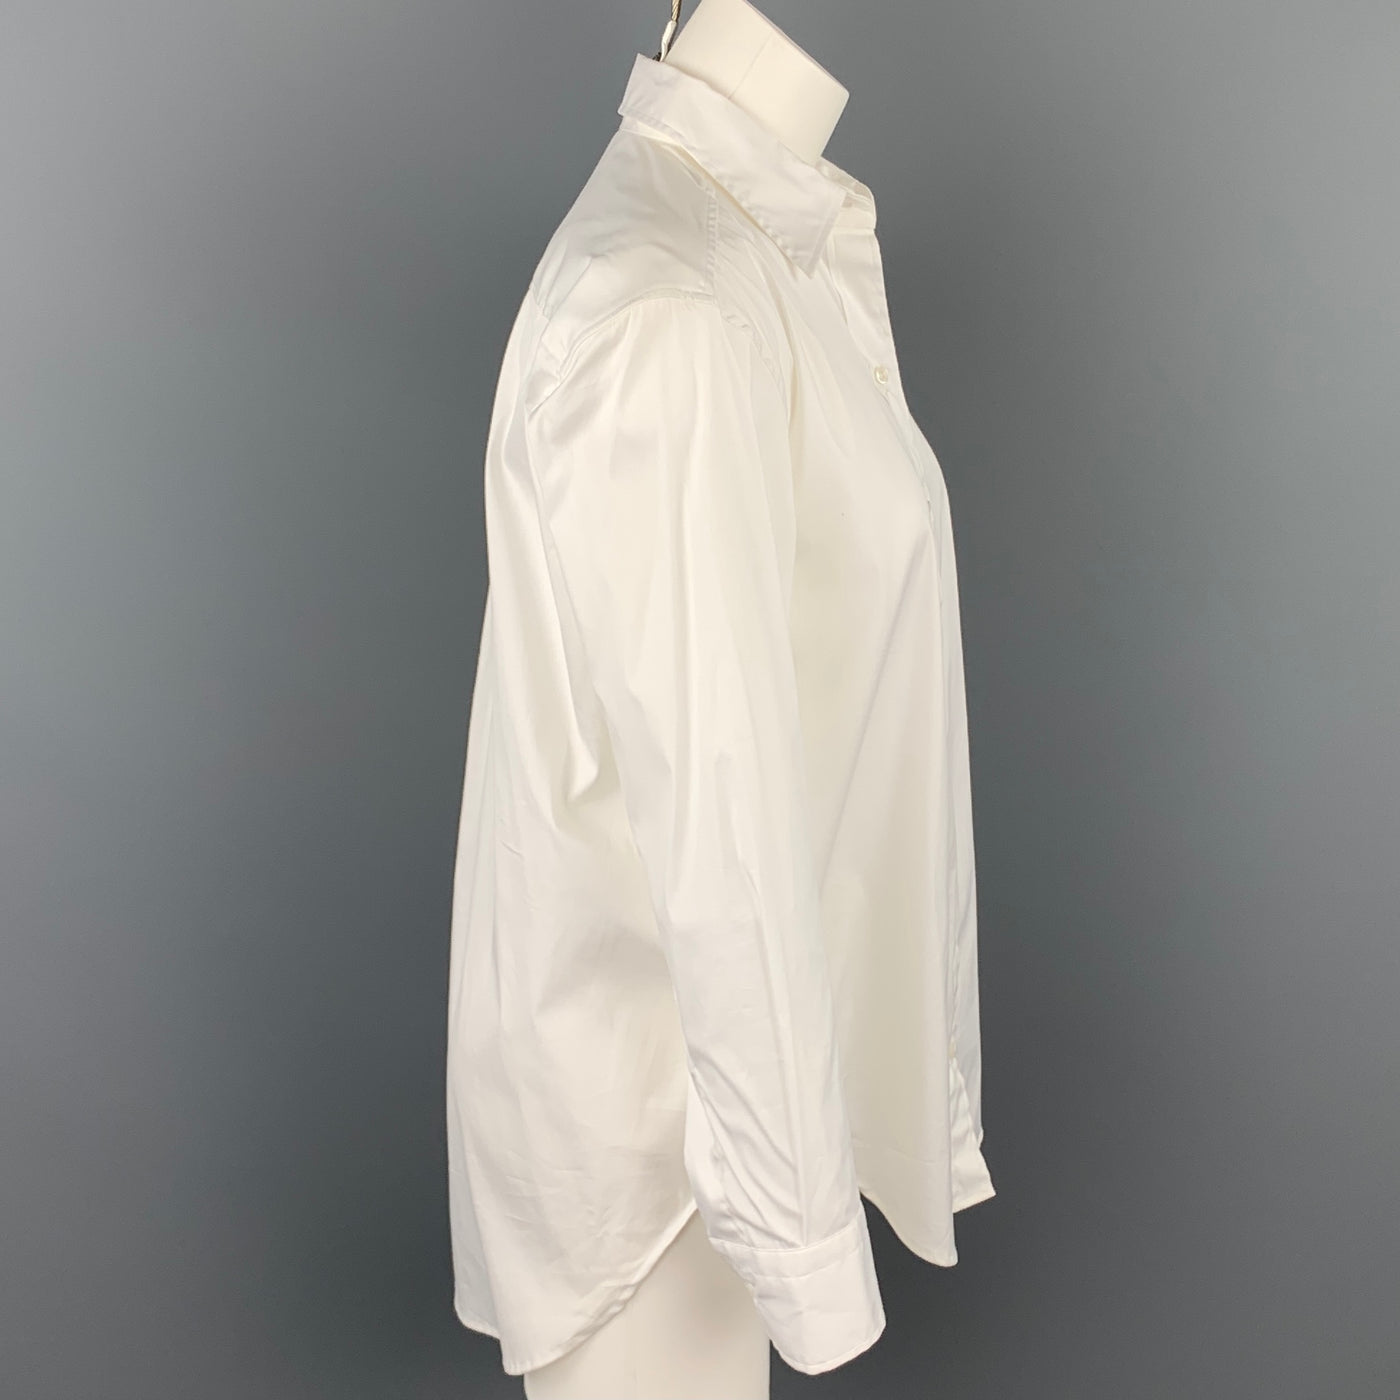 LORENZI Size 0 White Cotton Buttoned Dress Top